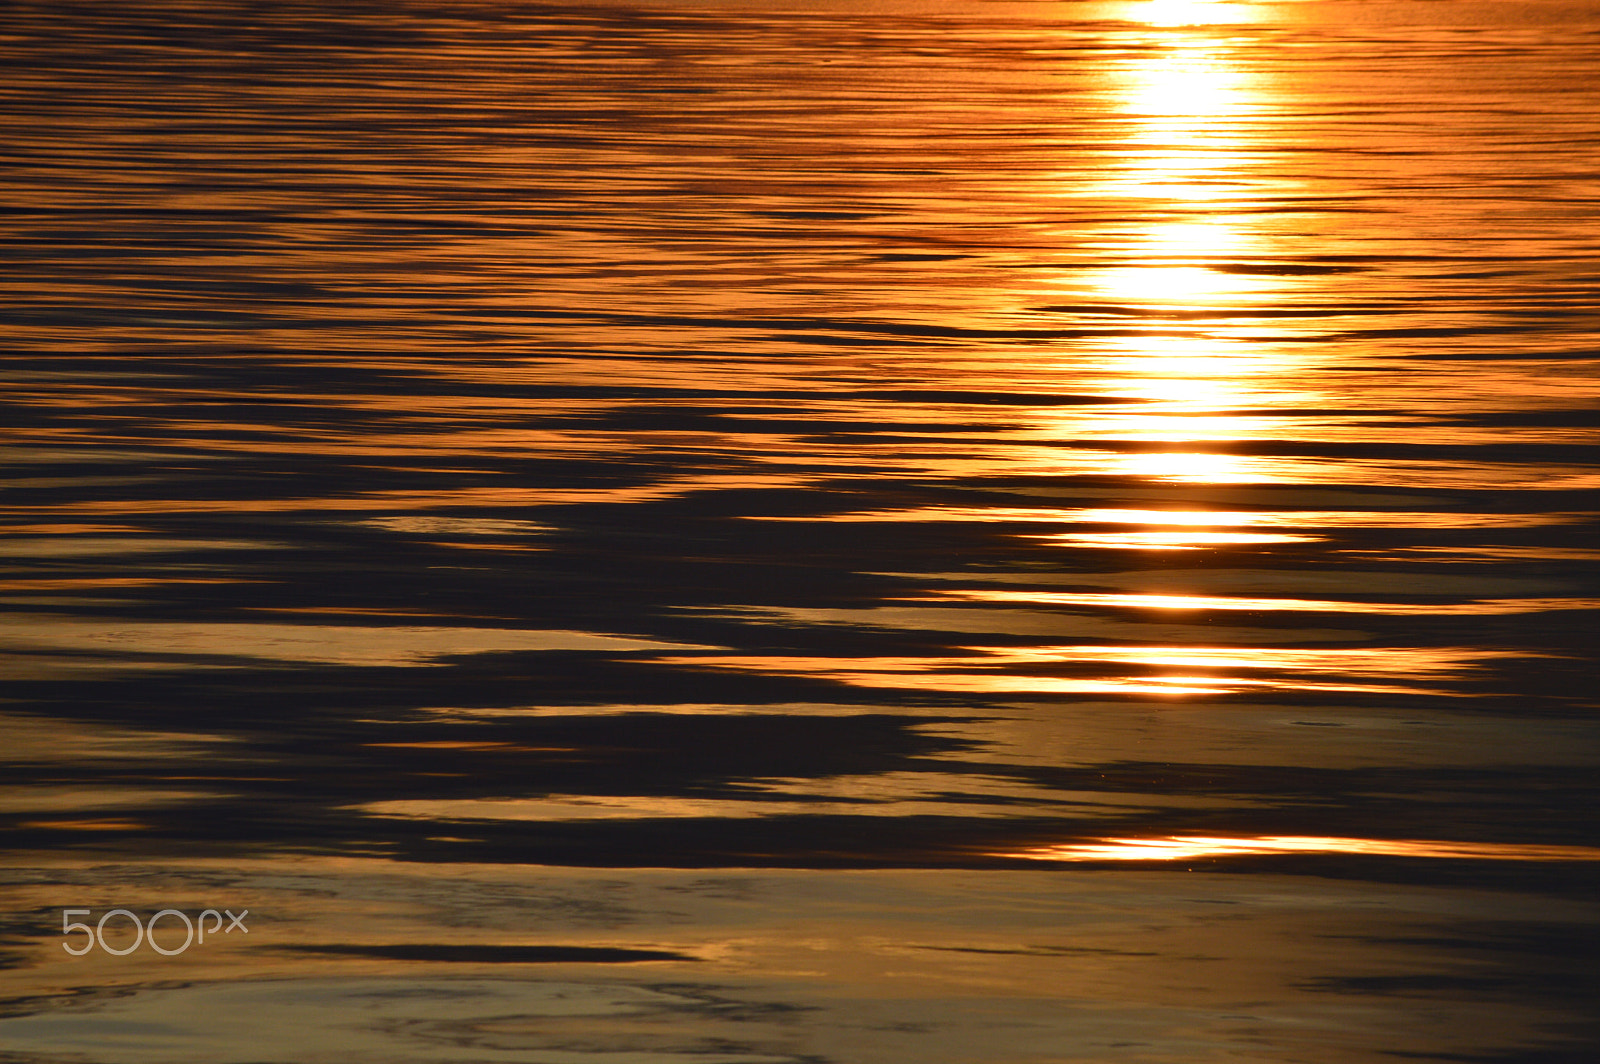 Nikon D3200 + Nikon AF-S DX Nikkor 55-300mm F4.5-5.6G ED VR sample photo. Sunset's reflection on the water, alaska photography